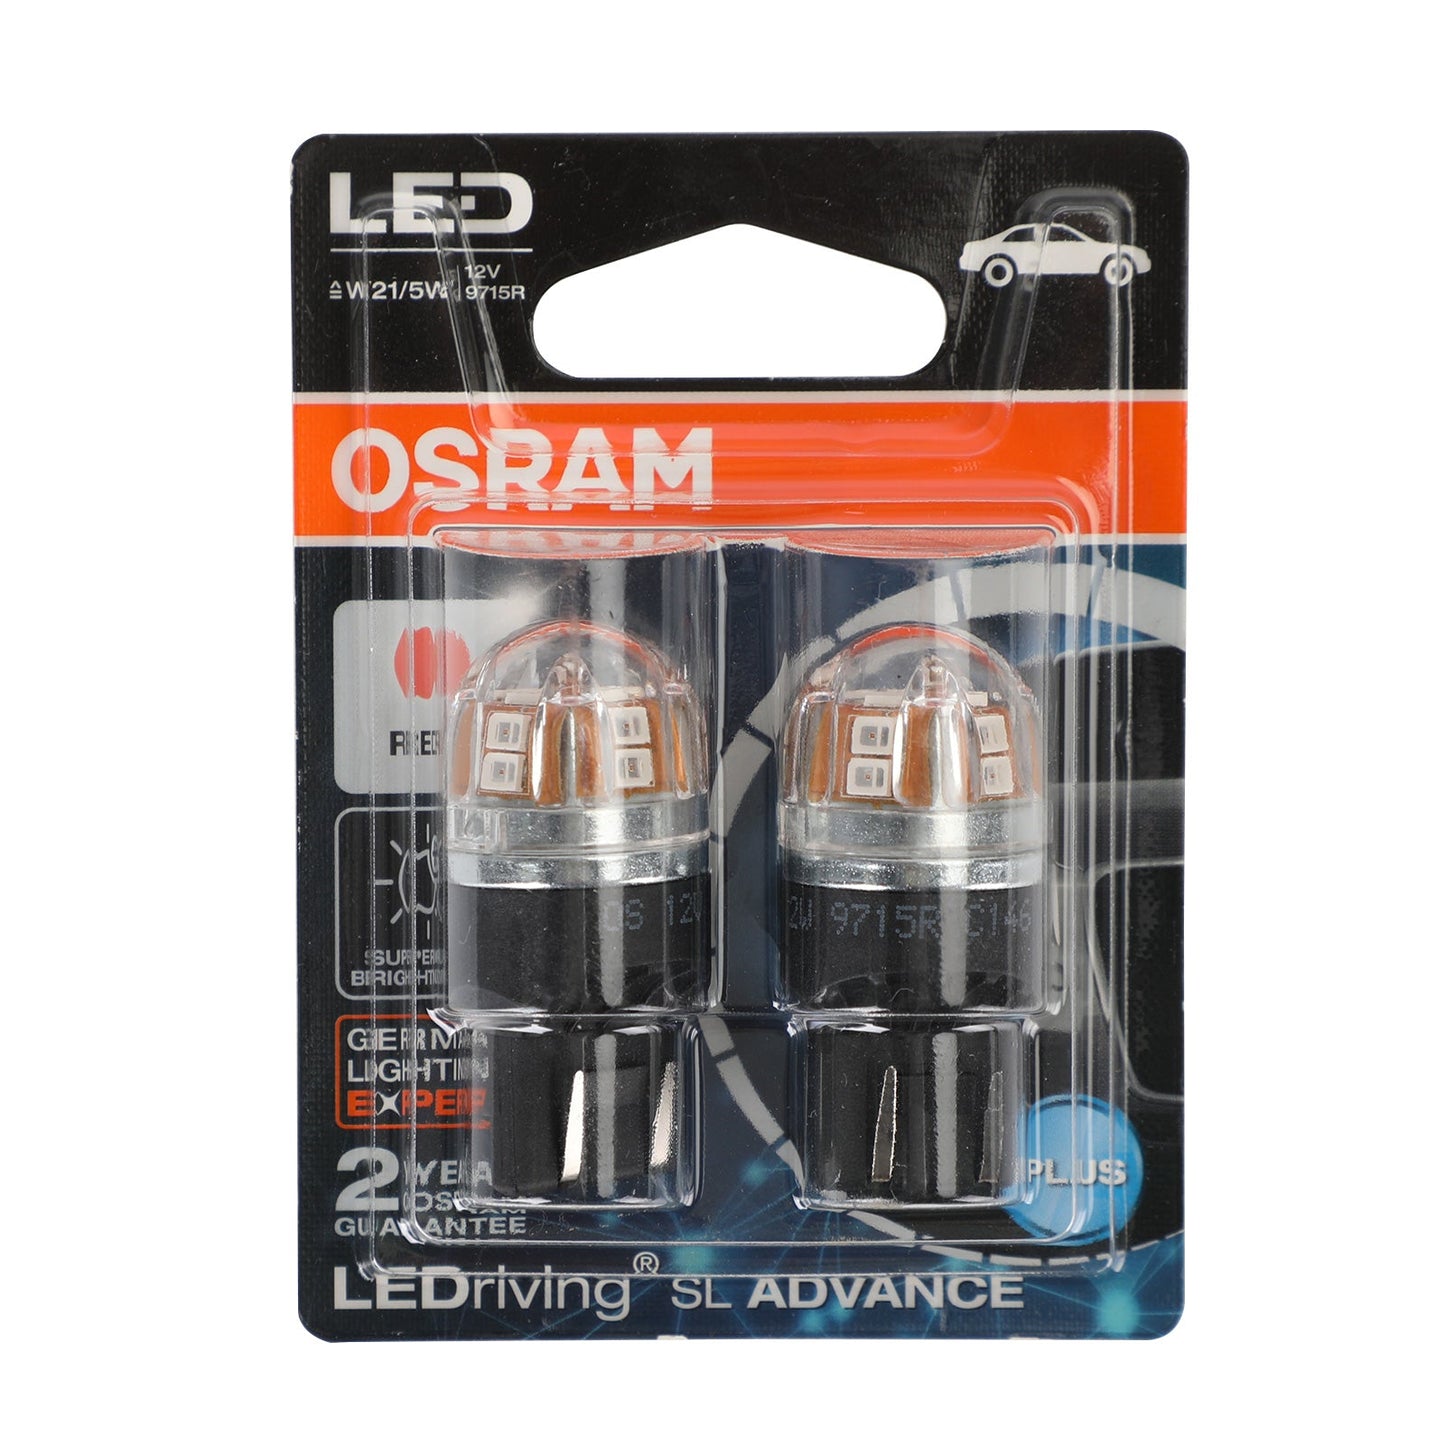 2x For OSRAM 9715R Car Auxiliary Bulbs LED W21/5W 12V 2/0.2W W3x16q